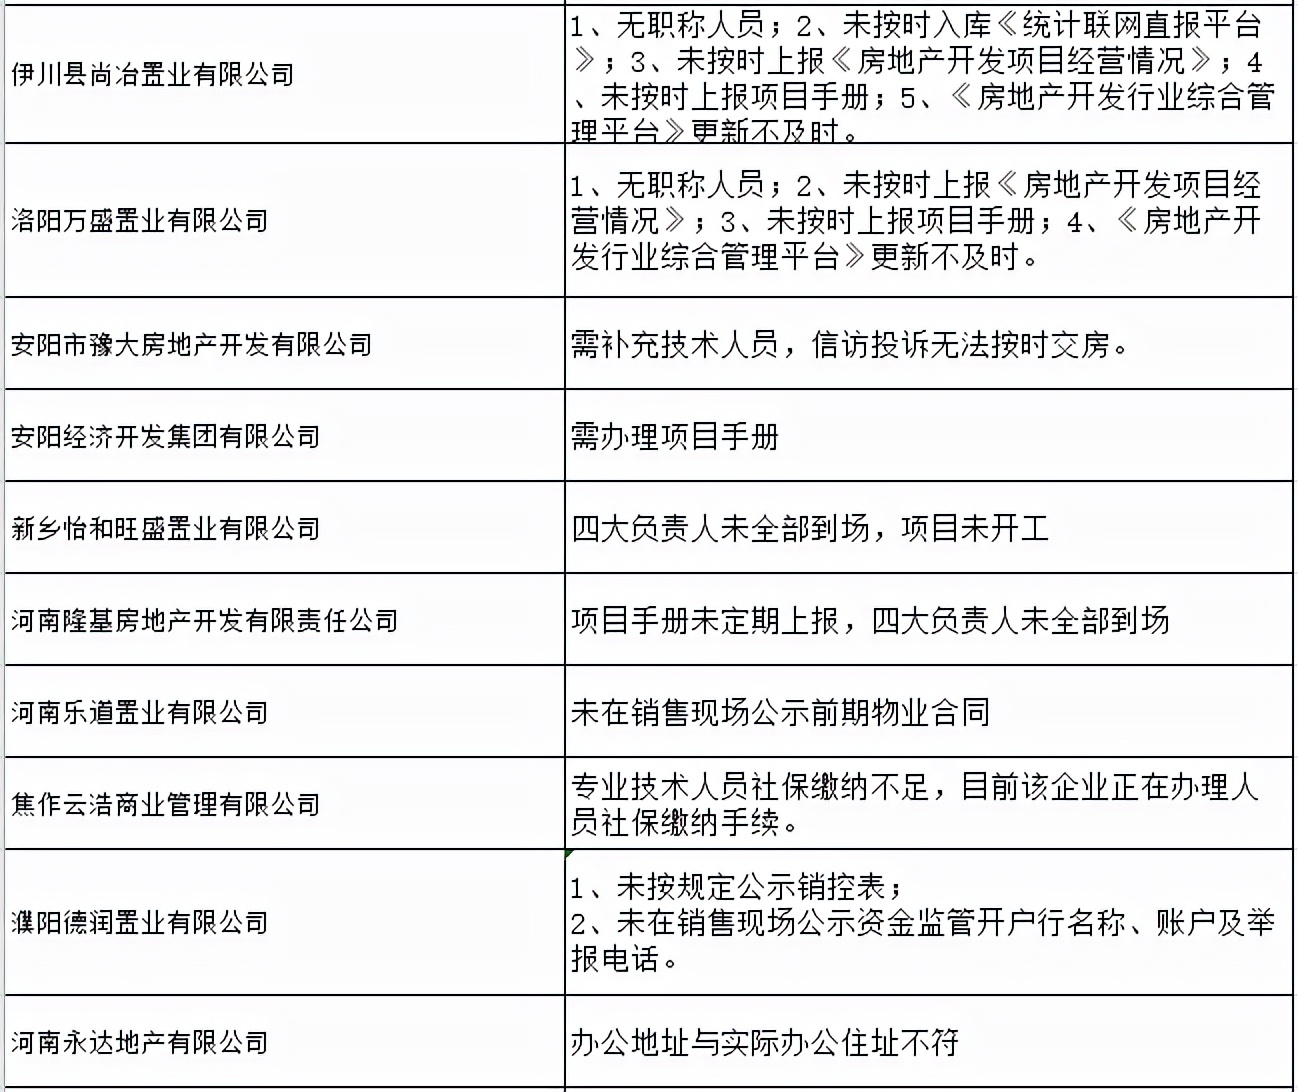 河南省39家房地产企业存在不同程度违法违规行为